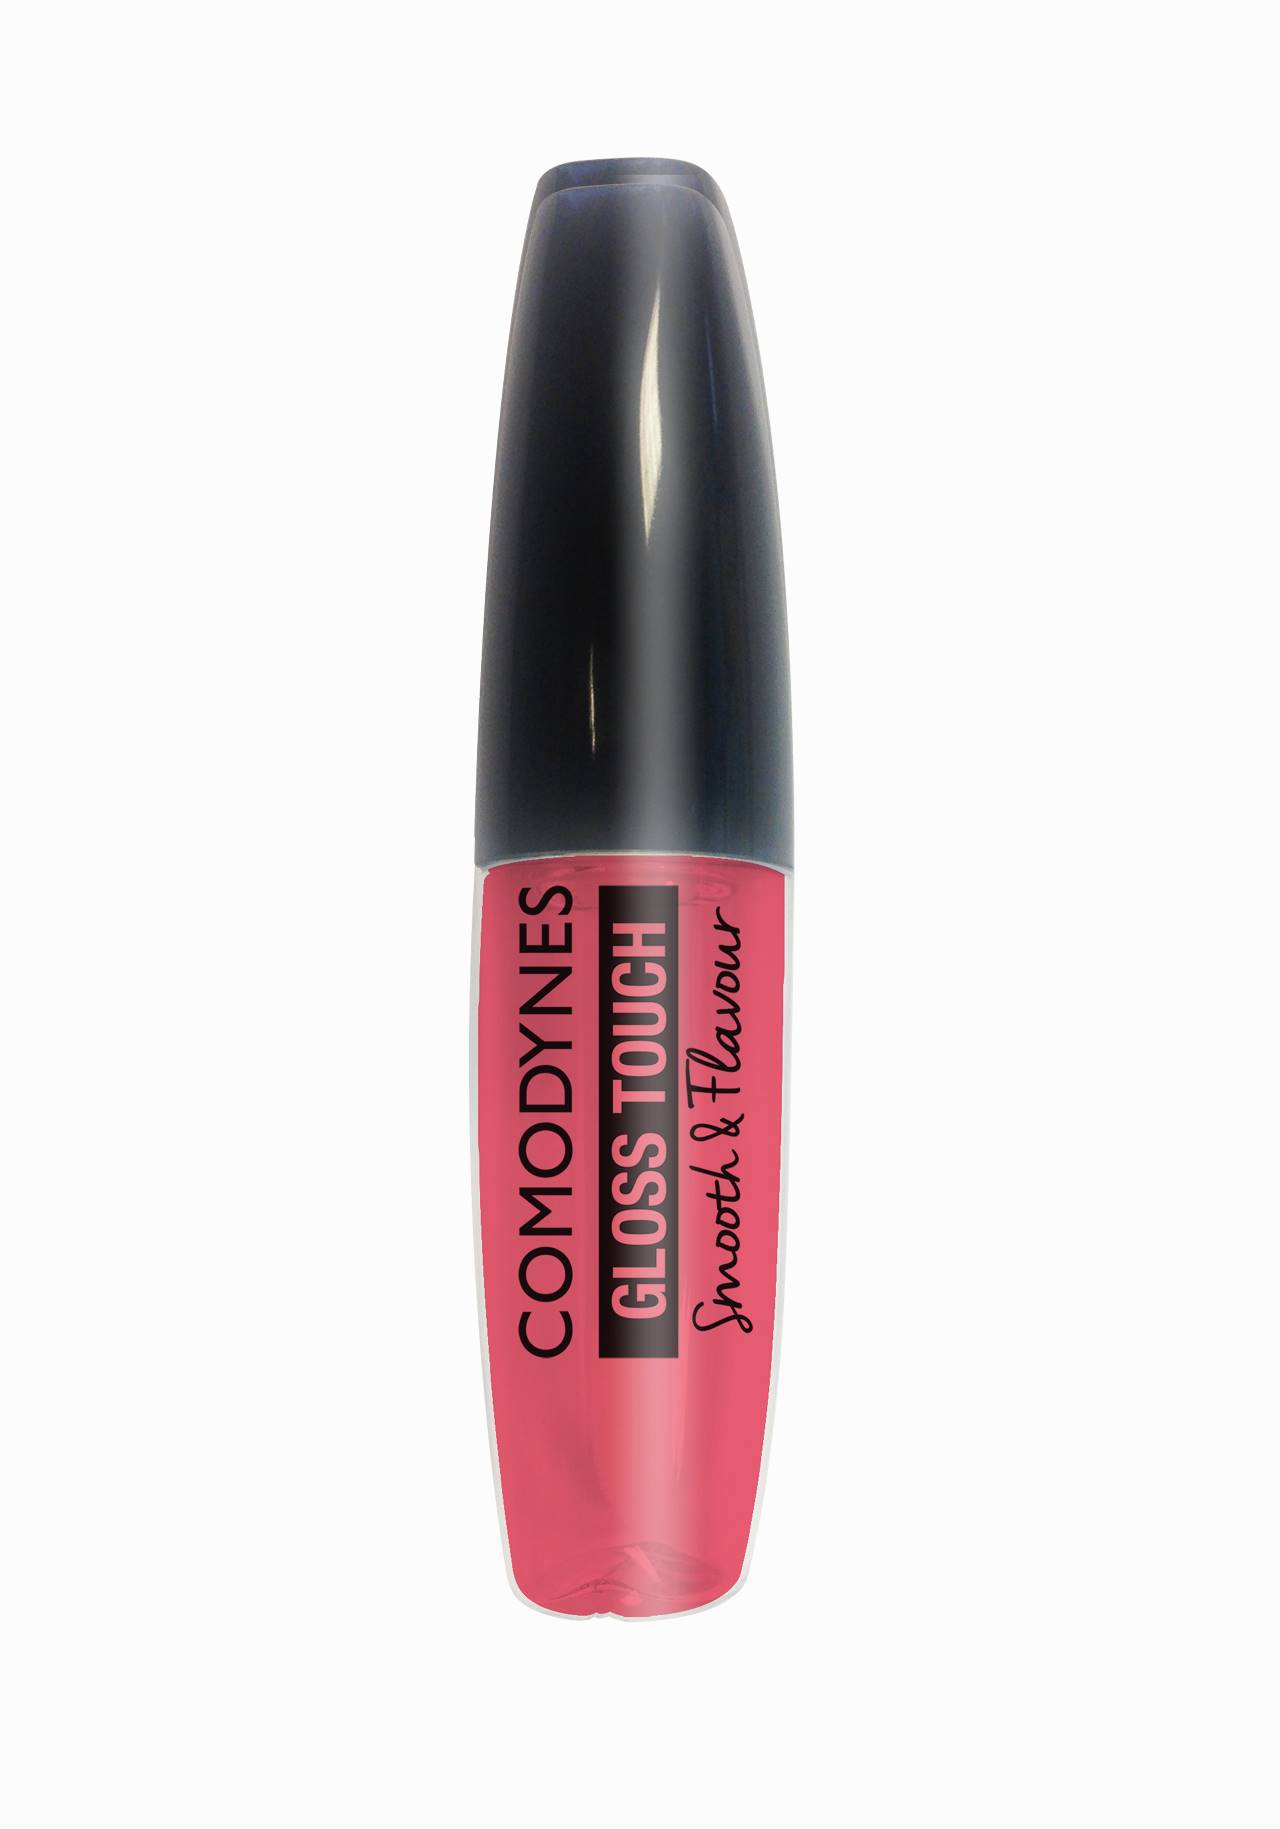 Gloss Touch Smooth & Flavour de Comodynes Guapísima y muy natural con maquillaje de farmacia por menos de 15€ 2020